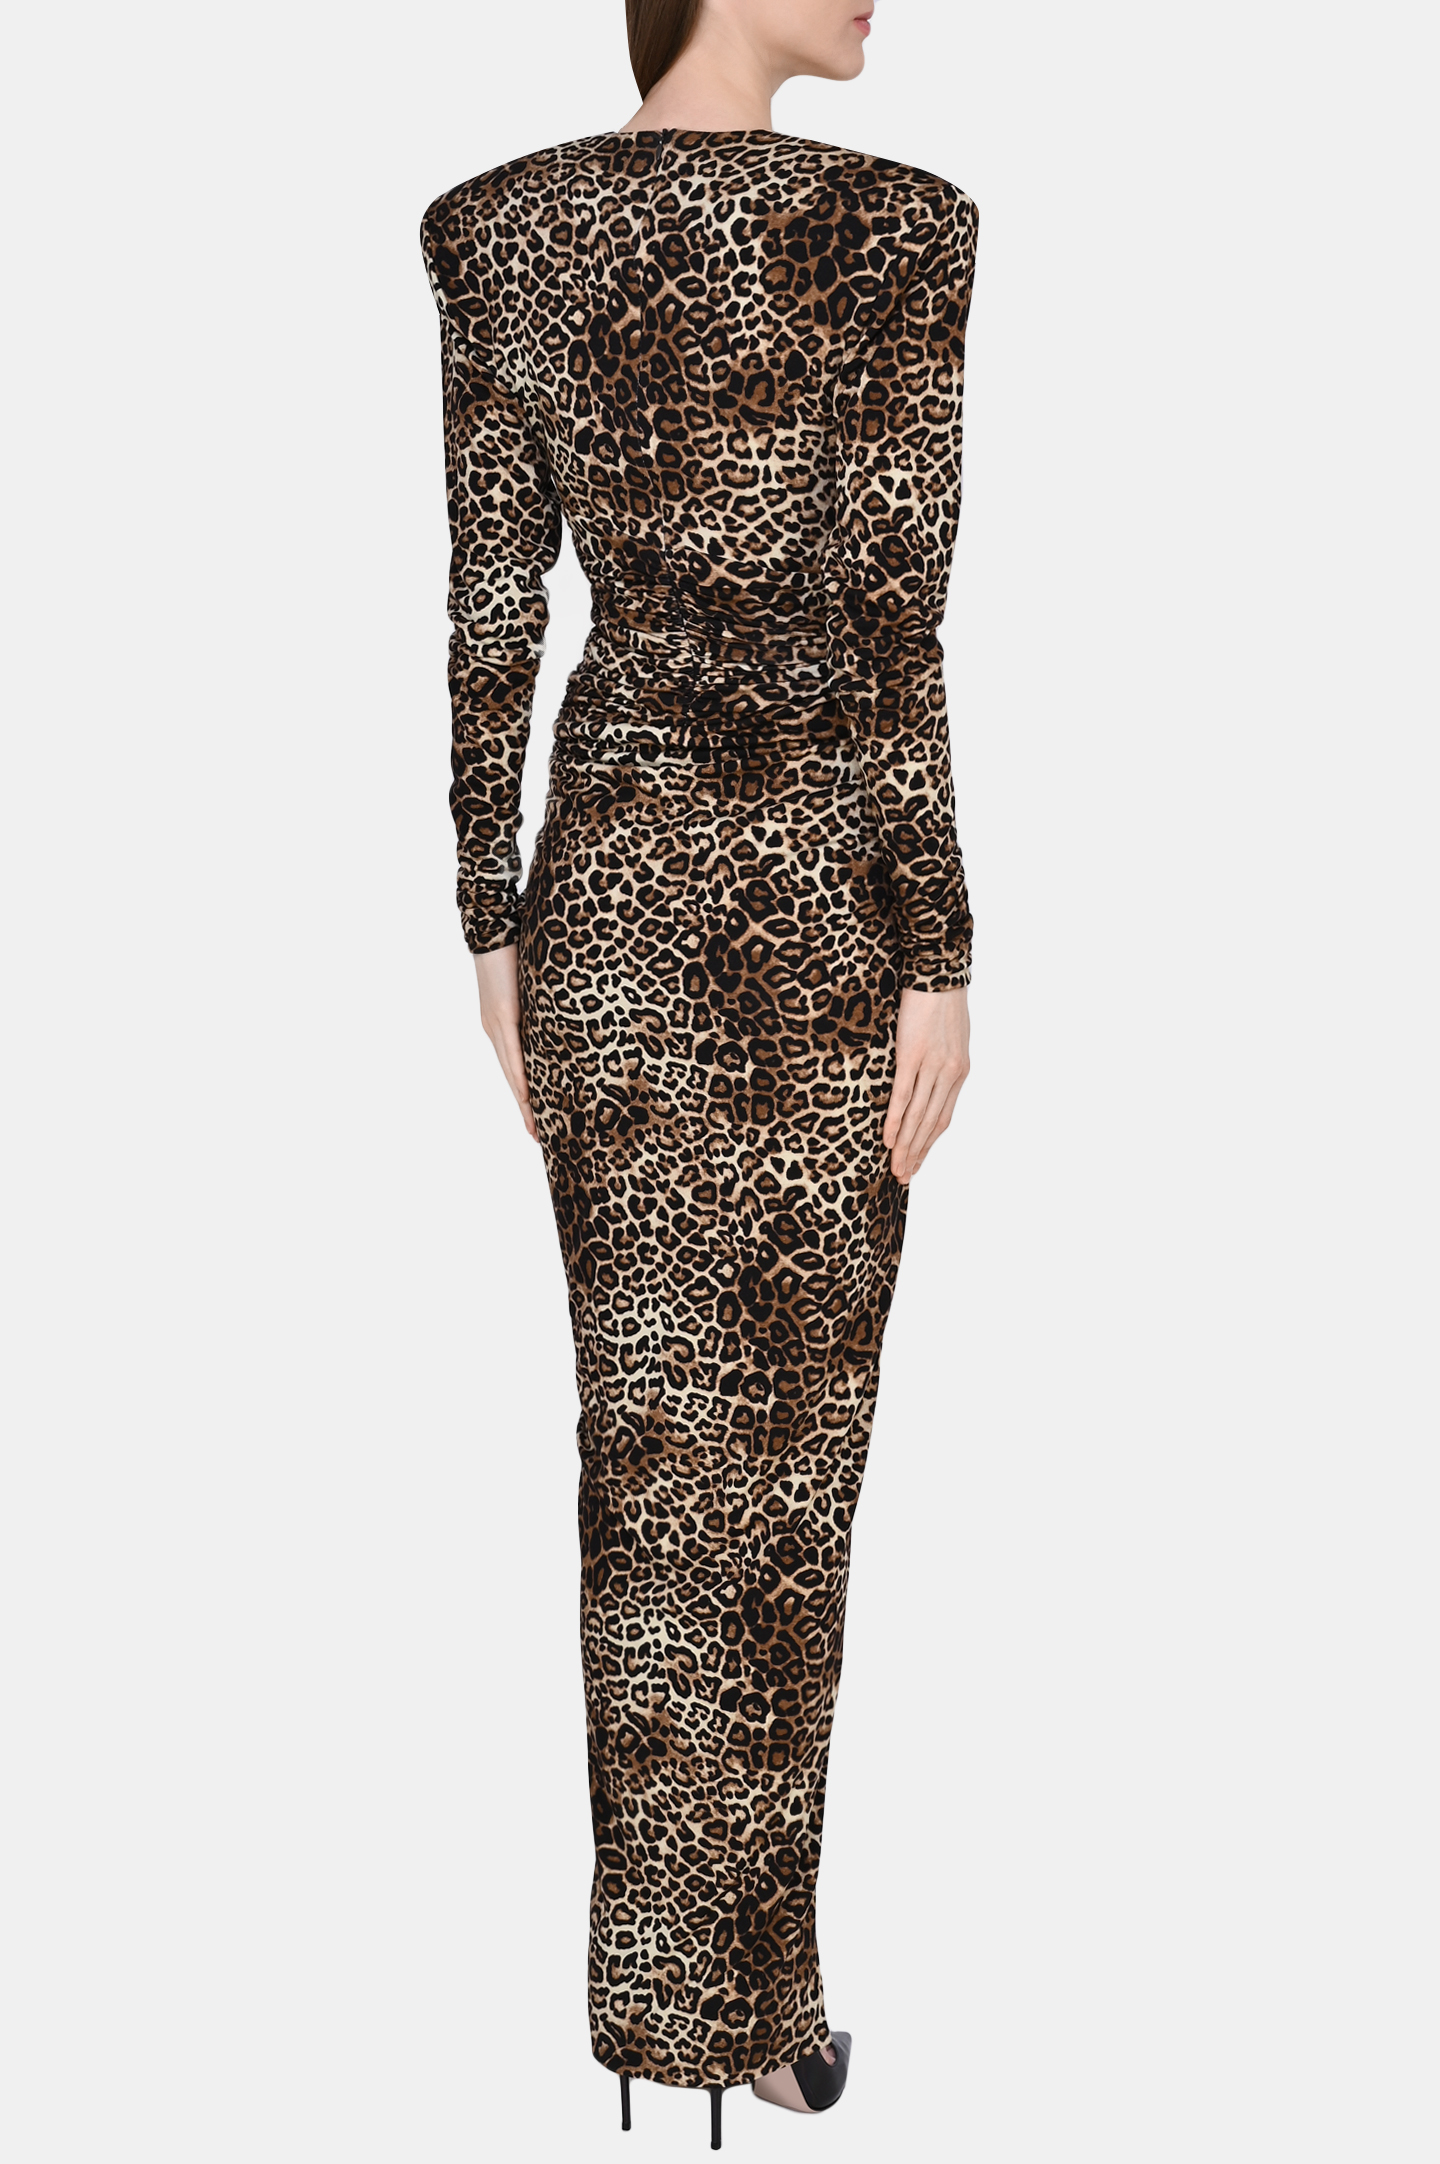 Платье ALEXANDRE VAUTHIER 224DR1614, цвет: Леопардовый, Женский